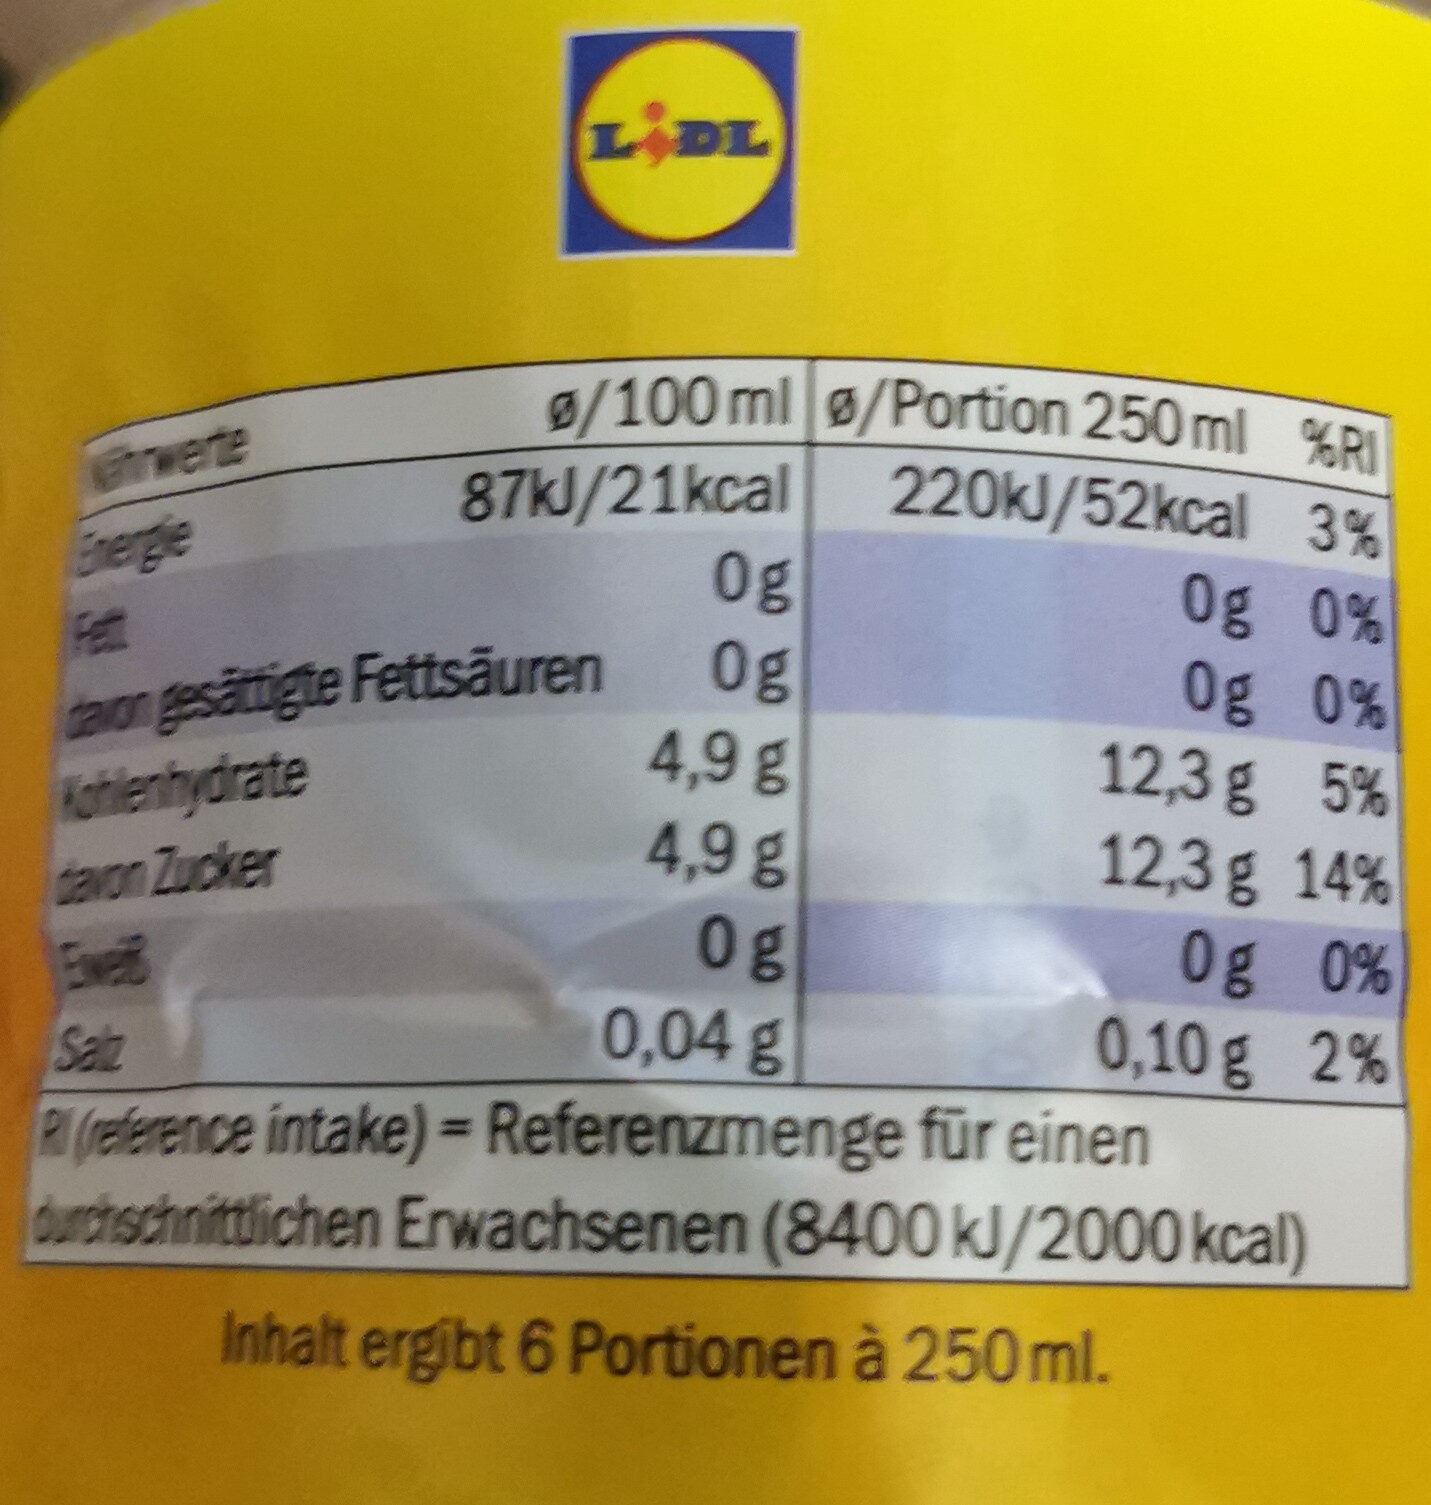 Eistee zitrone (citron) - Nährwertangaben